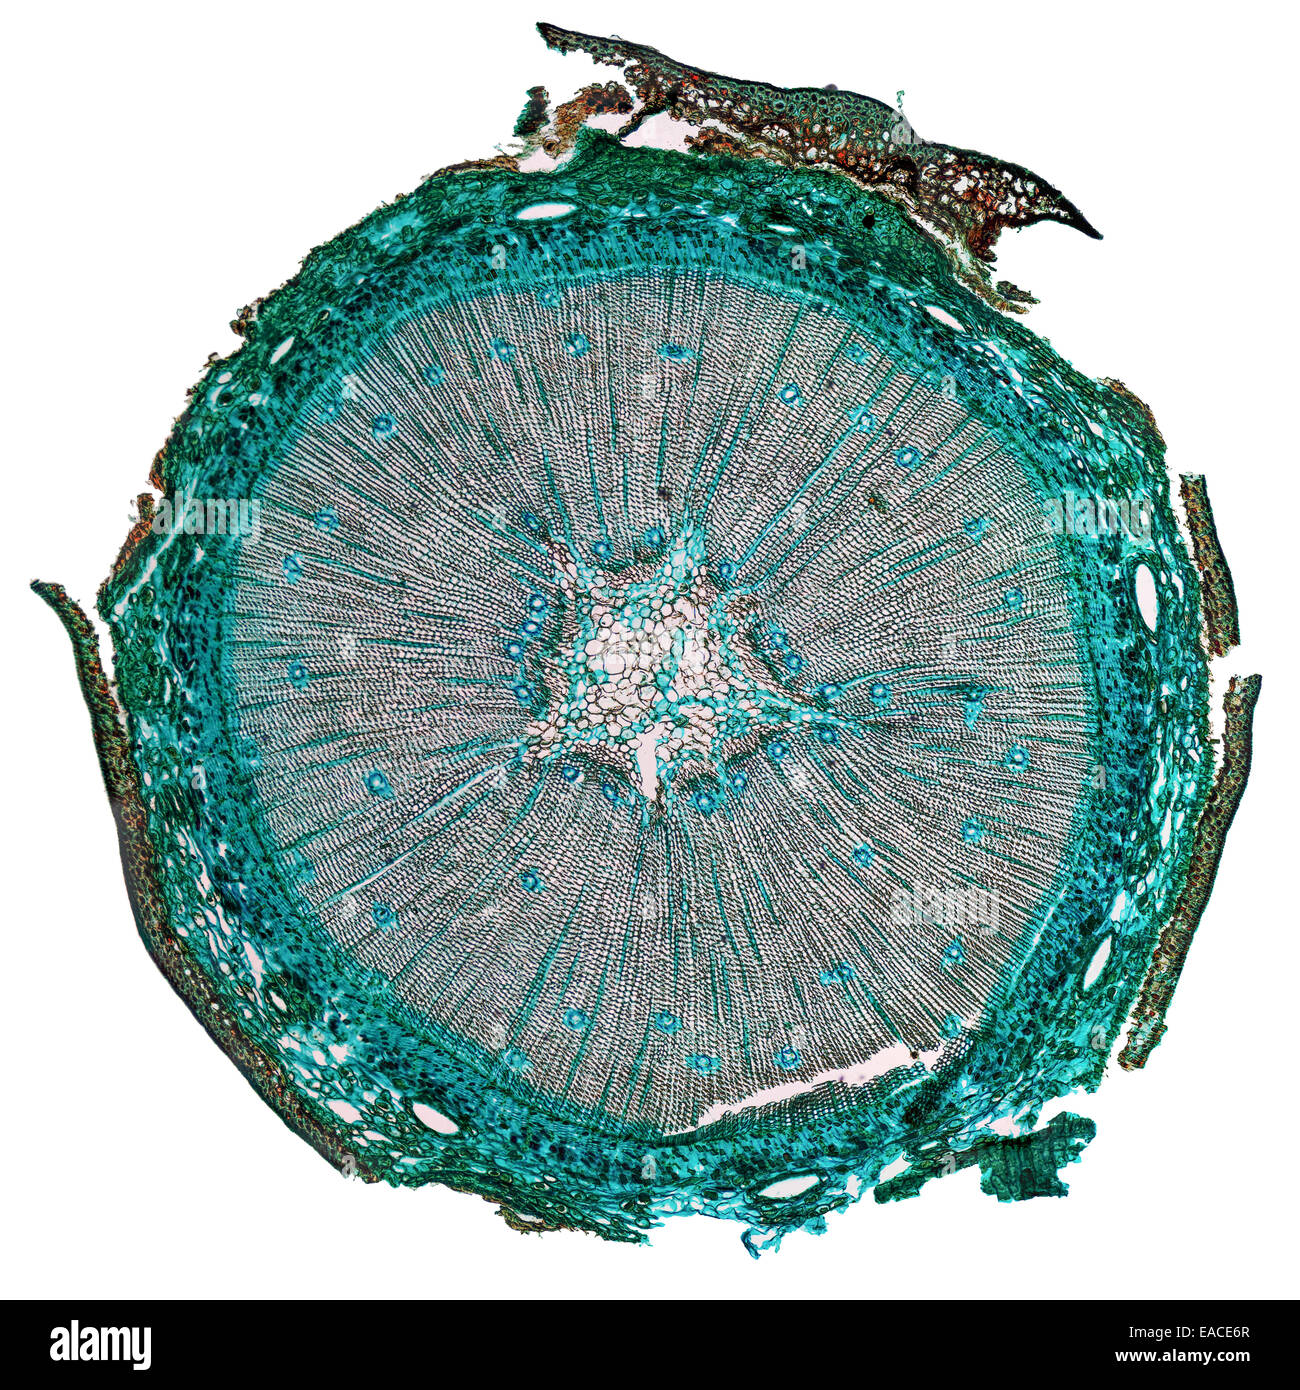 Hohe Auflösung leicht Mikrophotographie der Kiefer Baum Holz-Querschnitt  durch ein Mikroskop gesehen Stockfotografie - Alamy